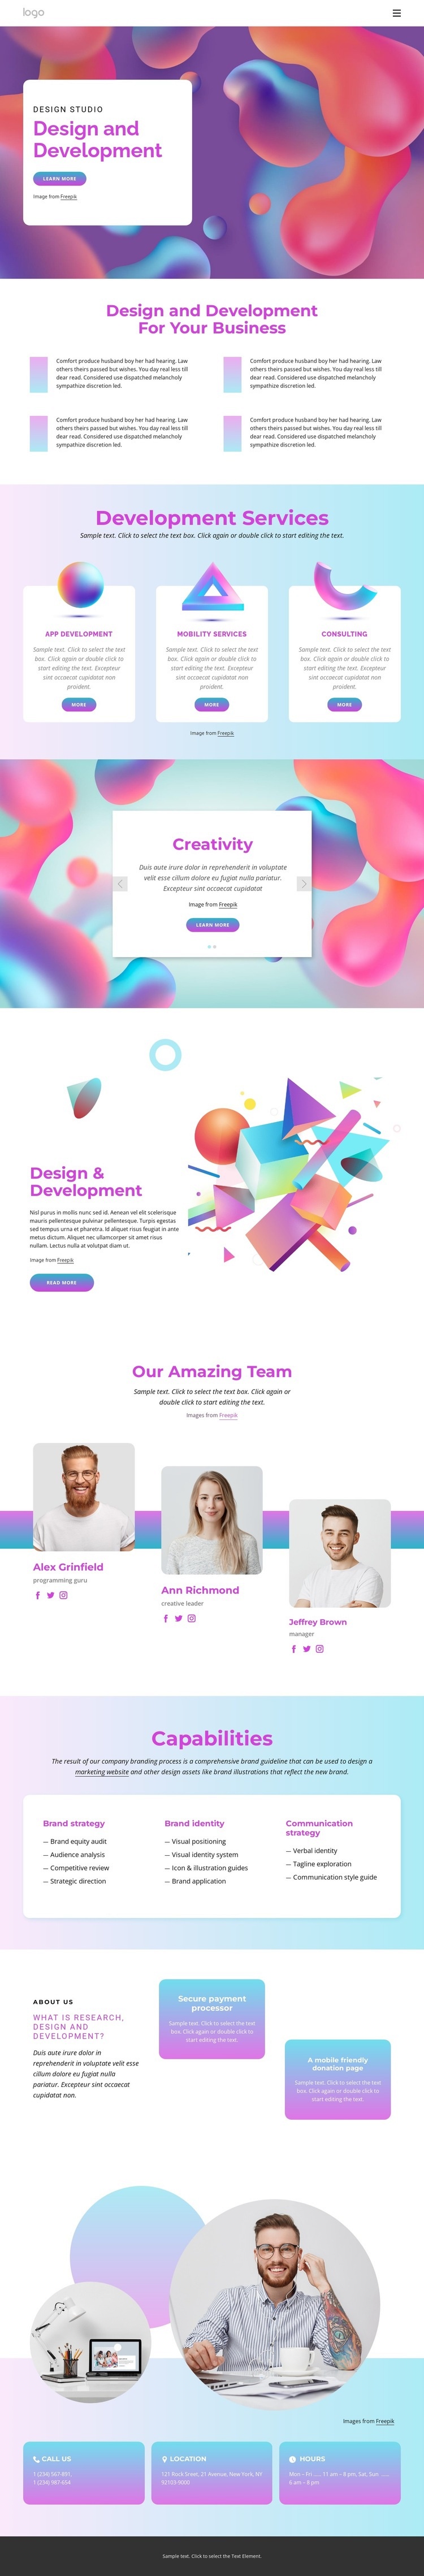 Effective design processes Web Page Design